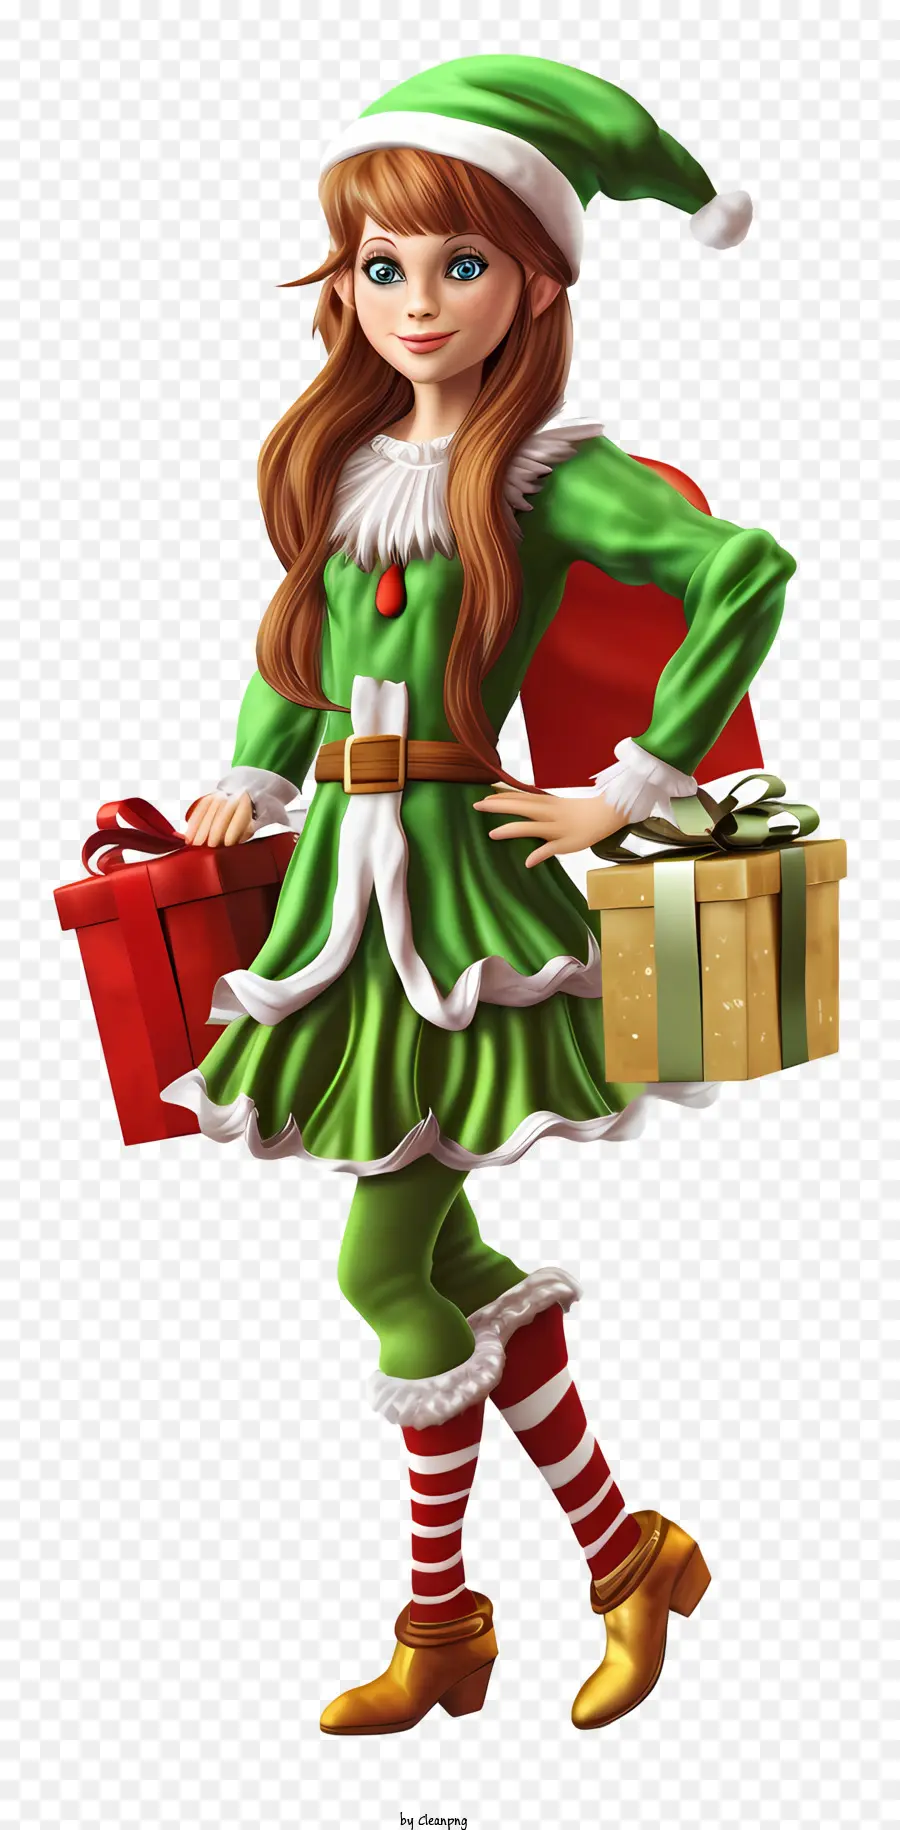 hộp quà - Cô gái cười mặc trang phục màu xanh lá cây và đỏ